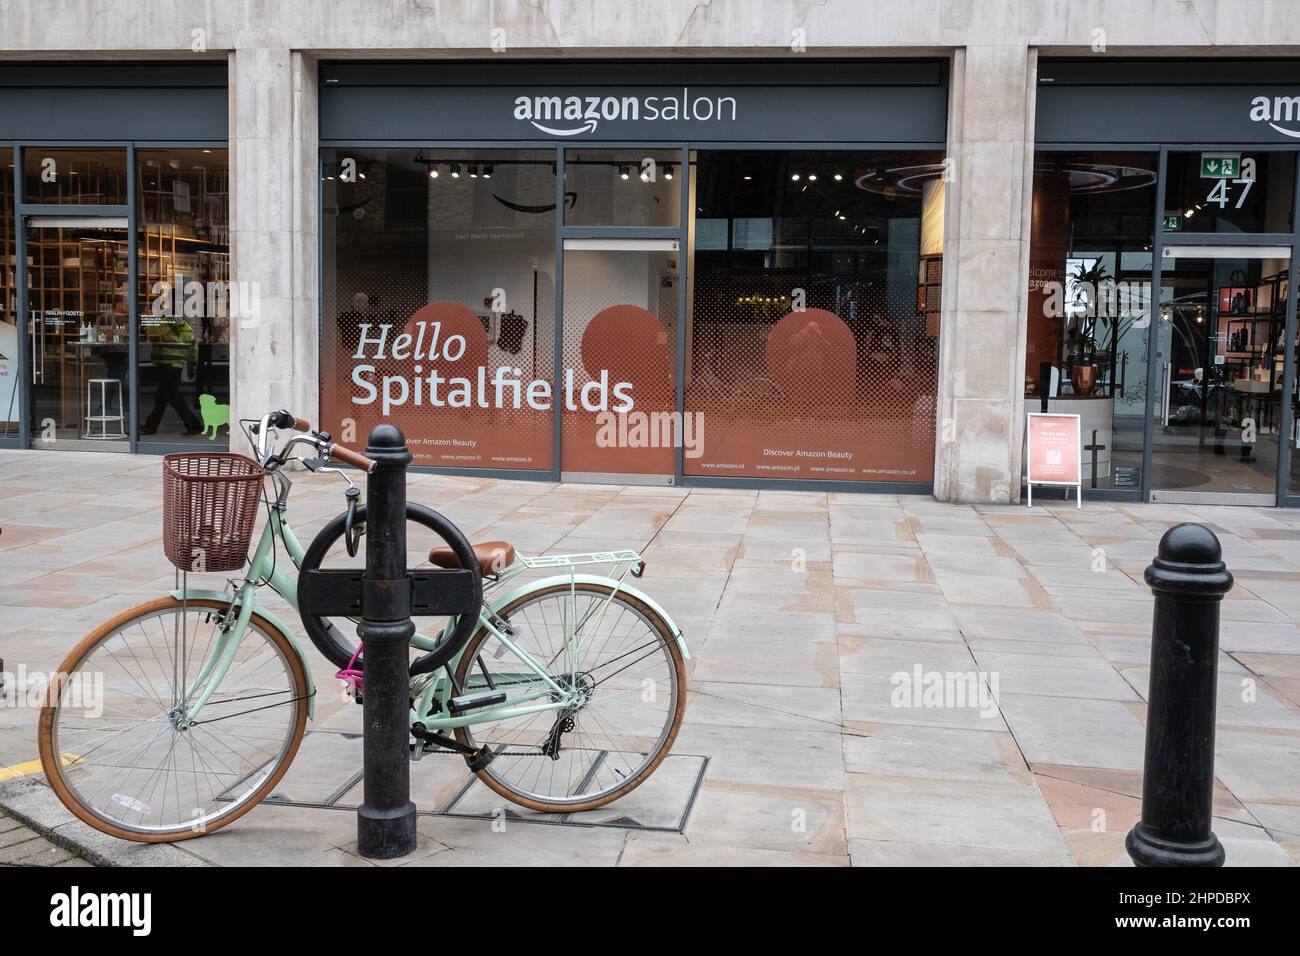 Amazon Salon near Liverpool Street Station in London, UK Stock Photo